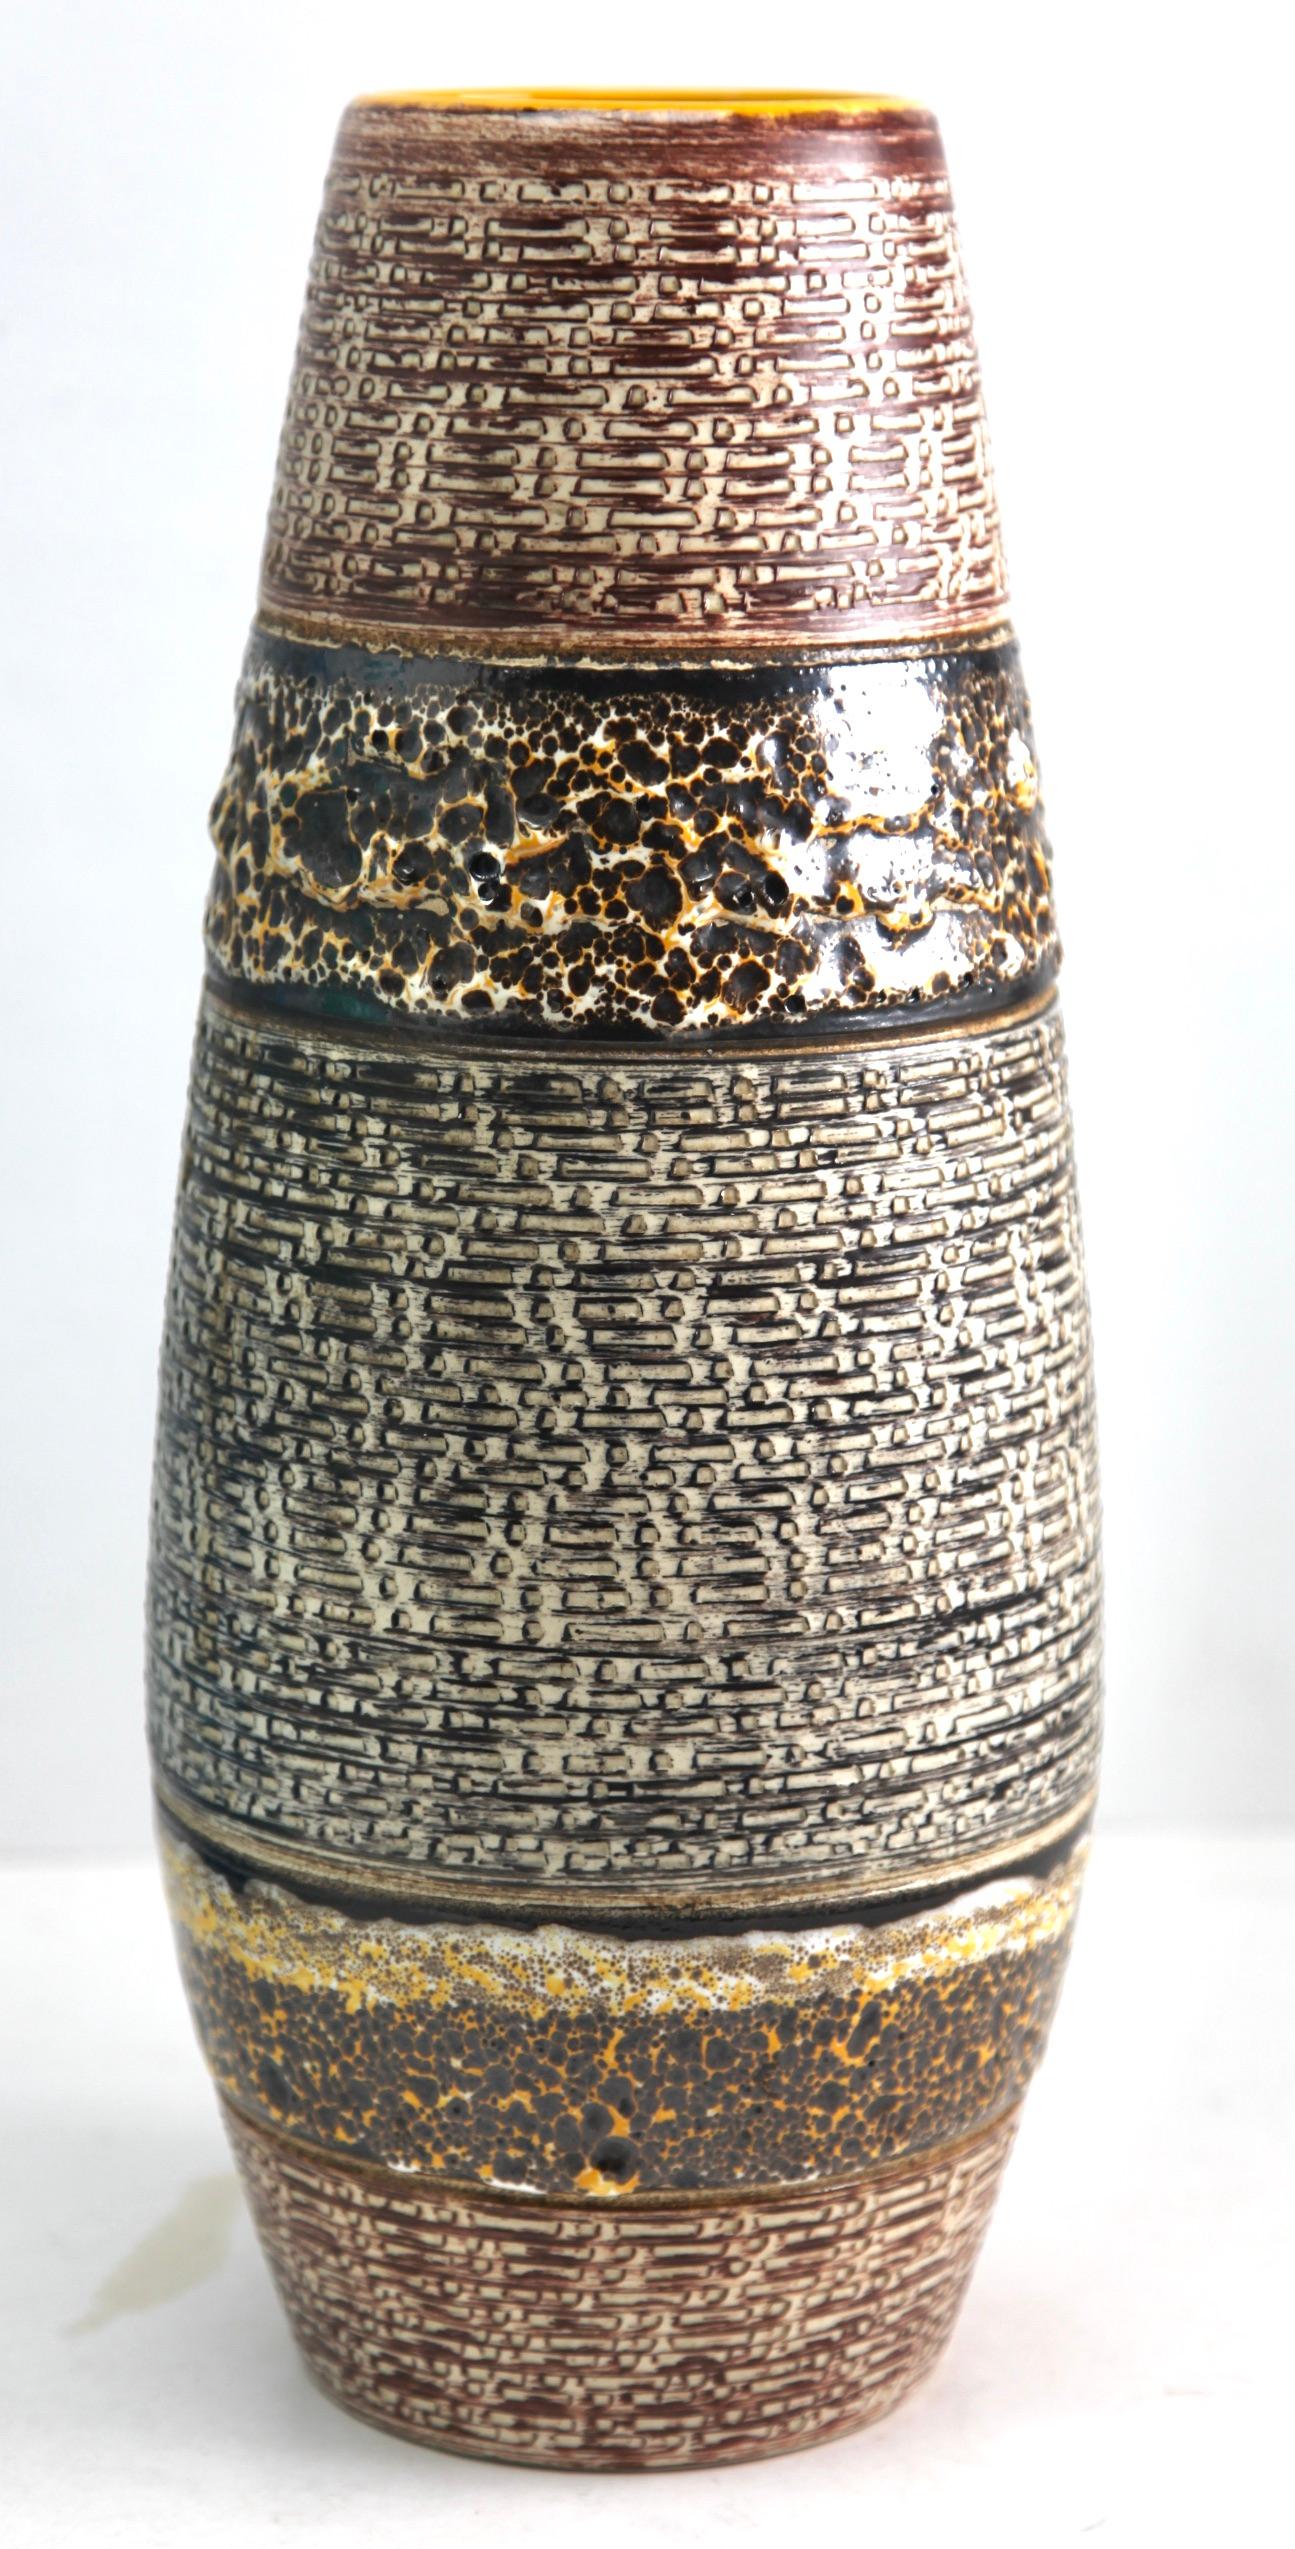 Ce vase vintage original a été produit dans les années 1970 en Allemagne. Il est fabriqué en poterie céramique.
Le fond est marqué du numéro de série du vase 136-40 Handarbeit.
Un design direct et minimaliste de l'ère du design des années 1960.